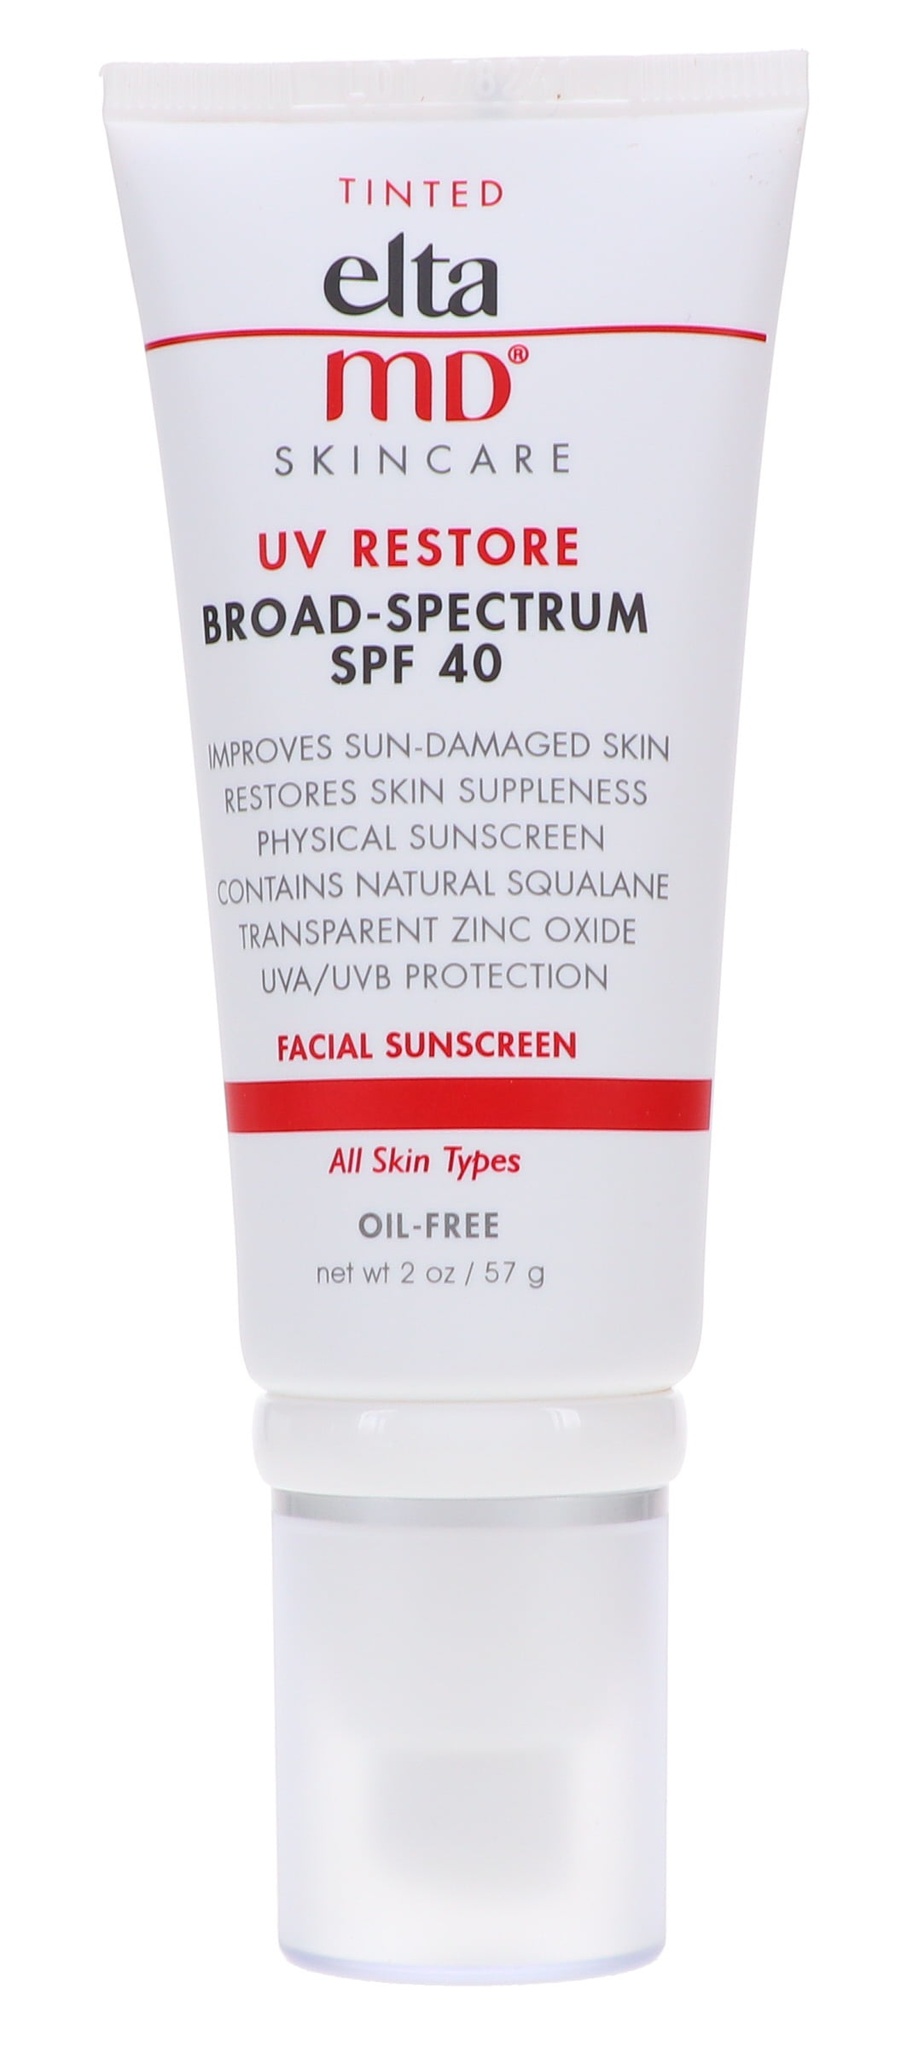 EltaMD UV Restore Tinted Broad-spectrum SPF 40 Facial Sunscreen